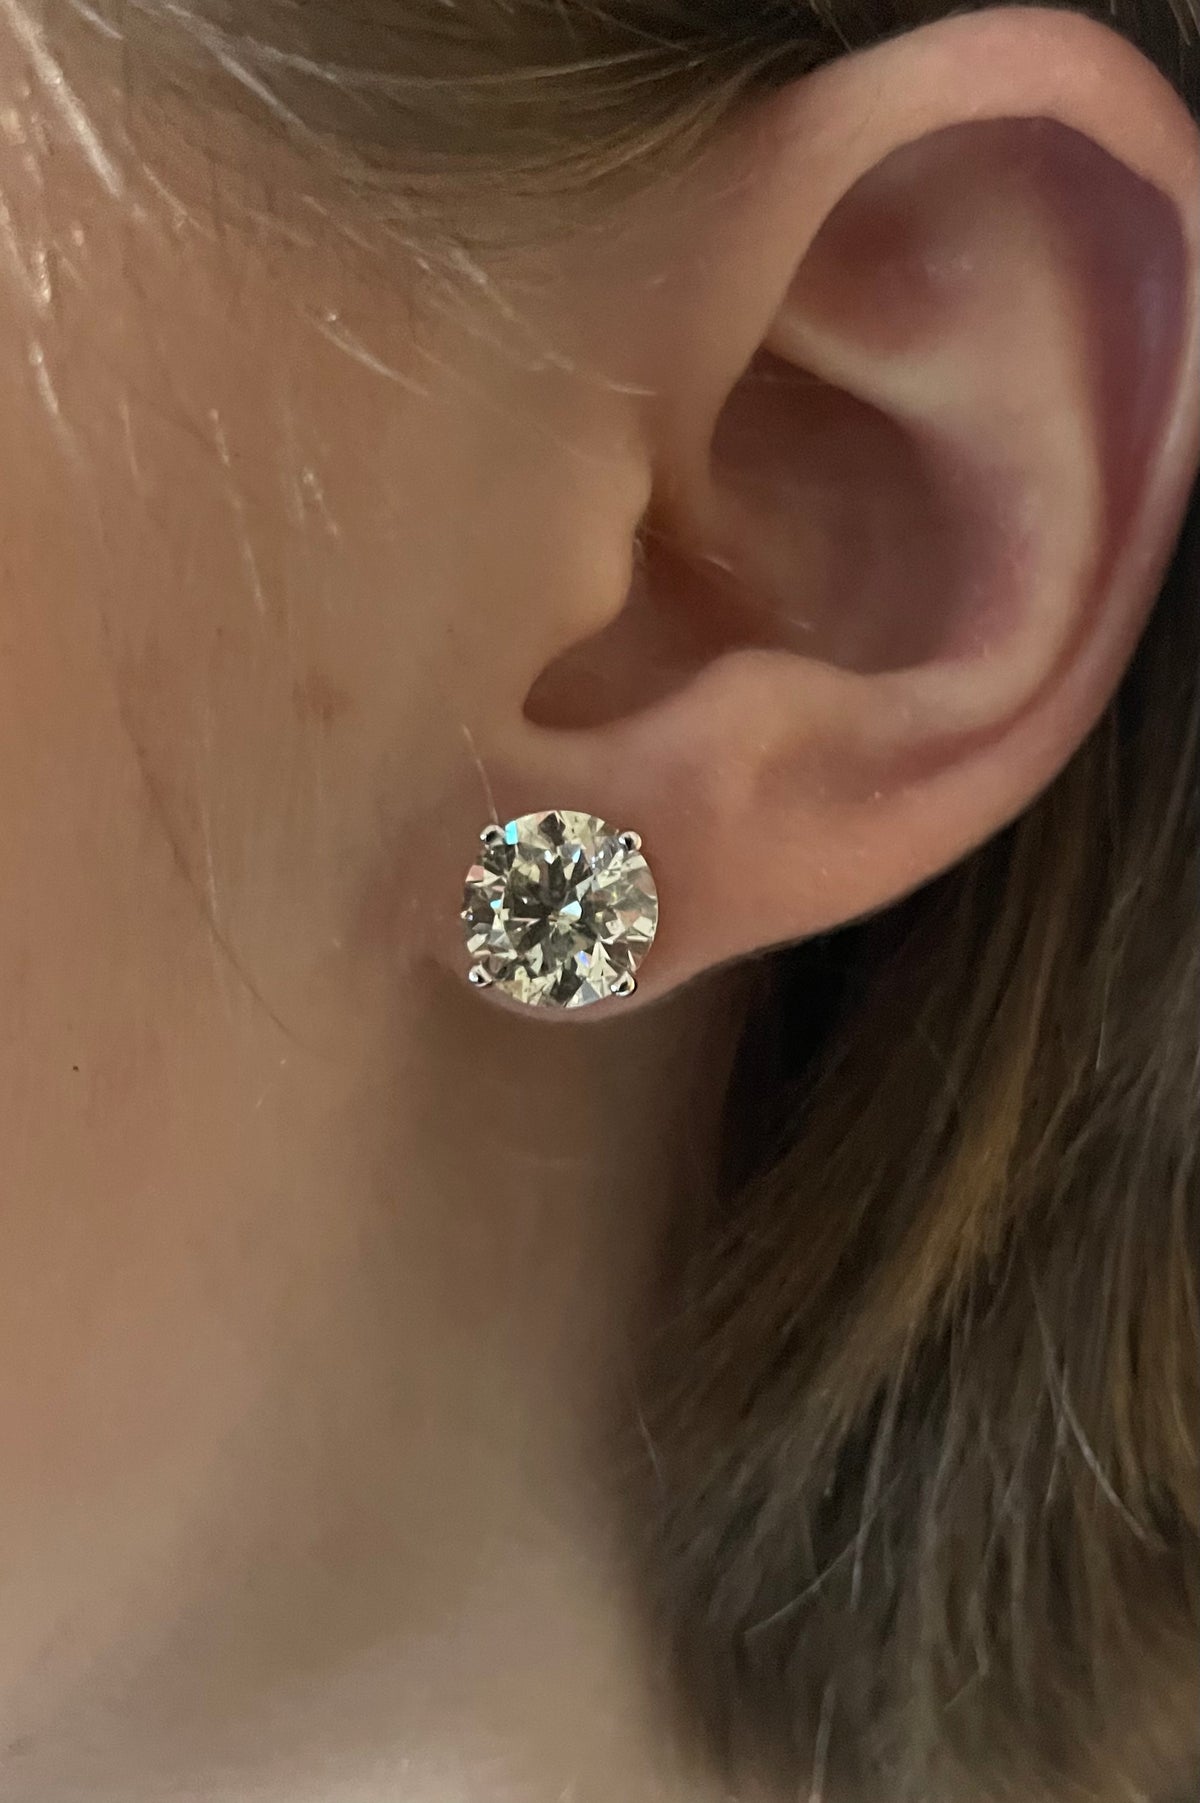 6.03ctw Diamond Earrings White Gold